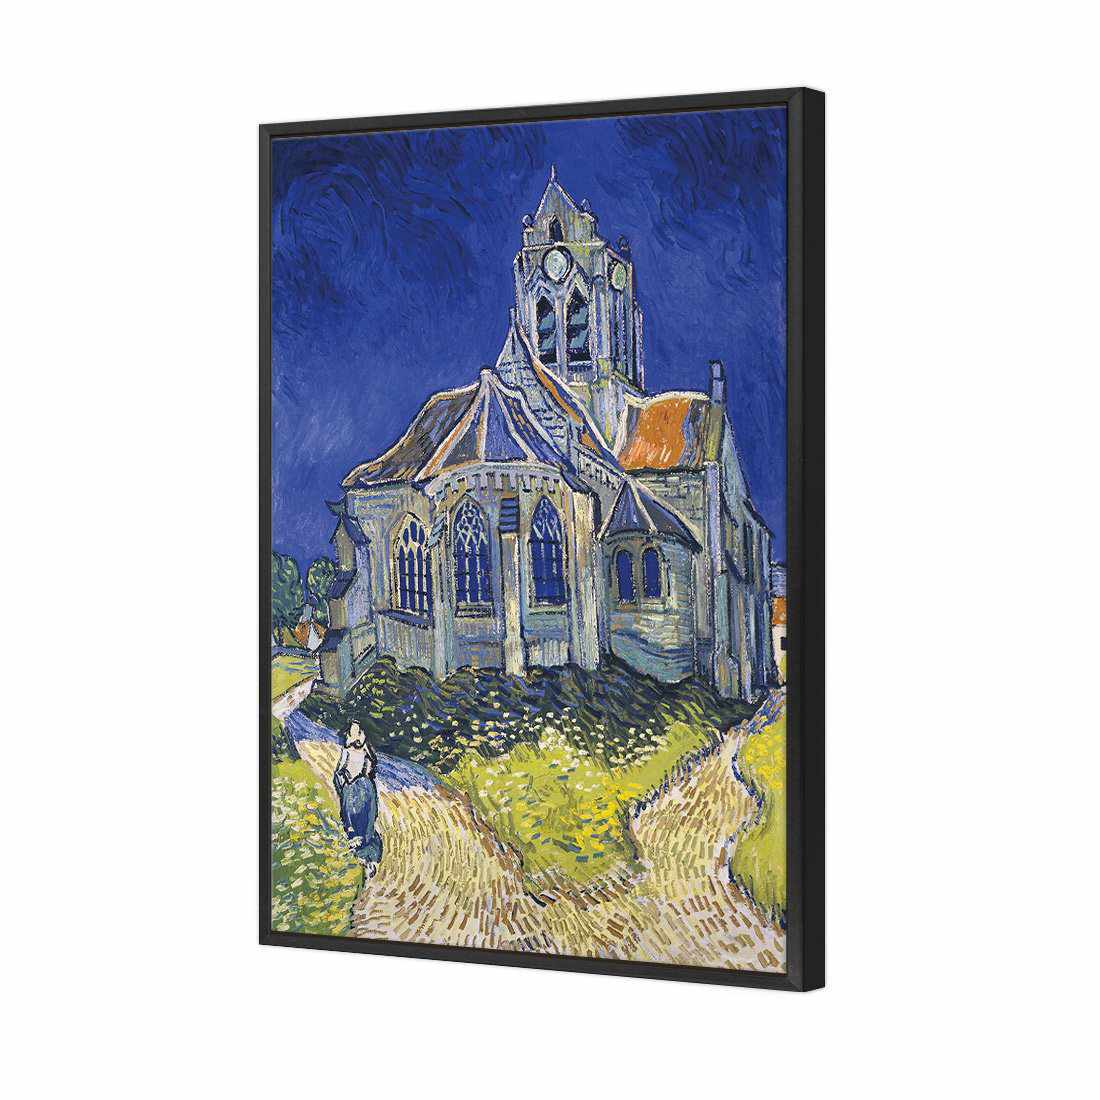 The Church At Auvers - Van Gogh Canvas Art-Canvas-Wall Art Designs-45x30cm-Canvas - Black Frame-Wall Art Designs